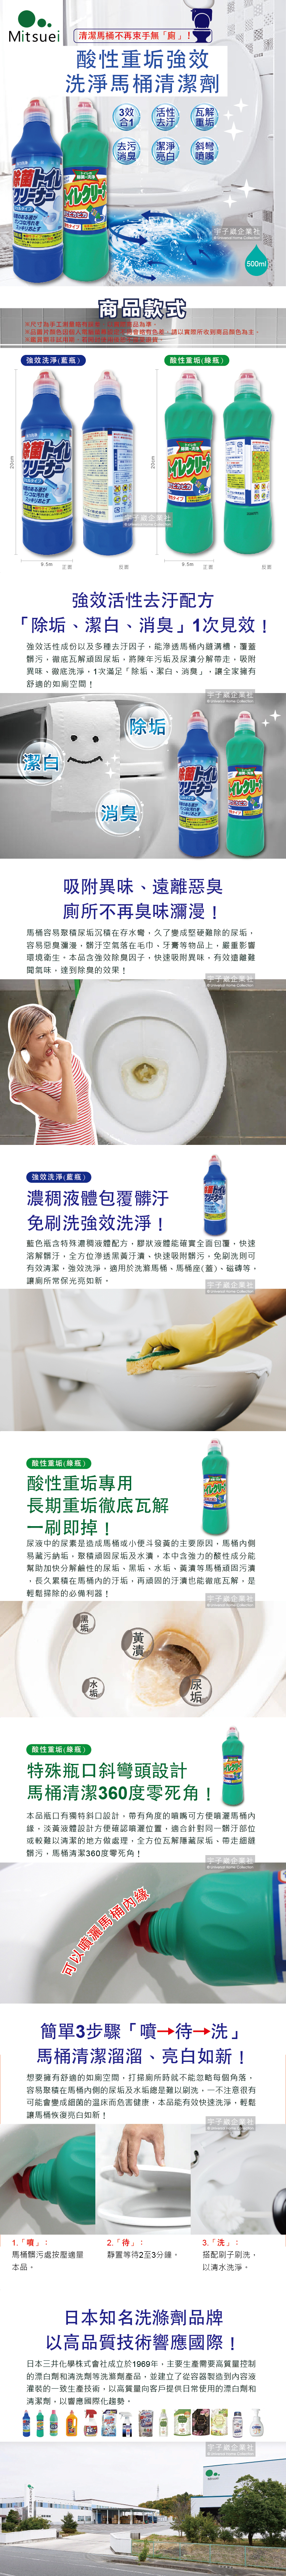 日本MITSUEI美净易-酸性重垢强效洗净马桶清洁剂介绍图